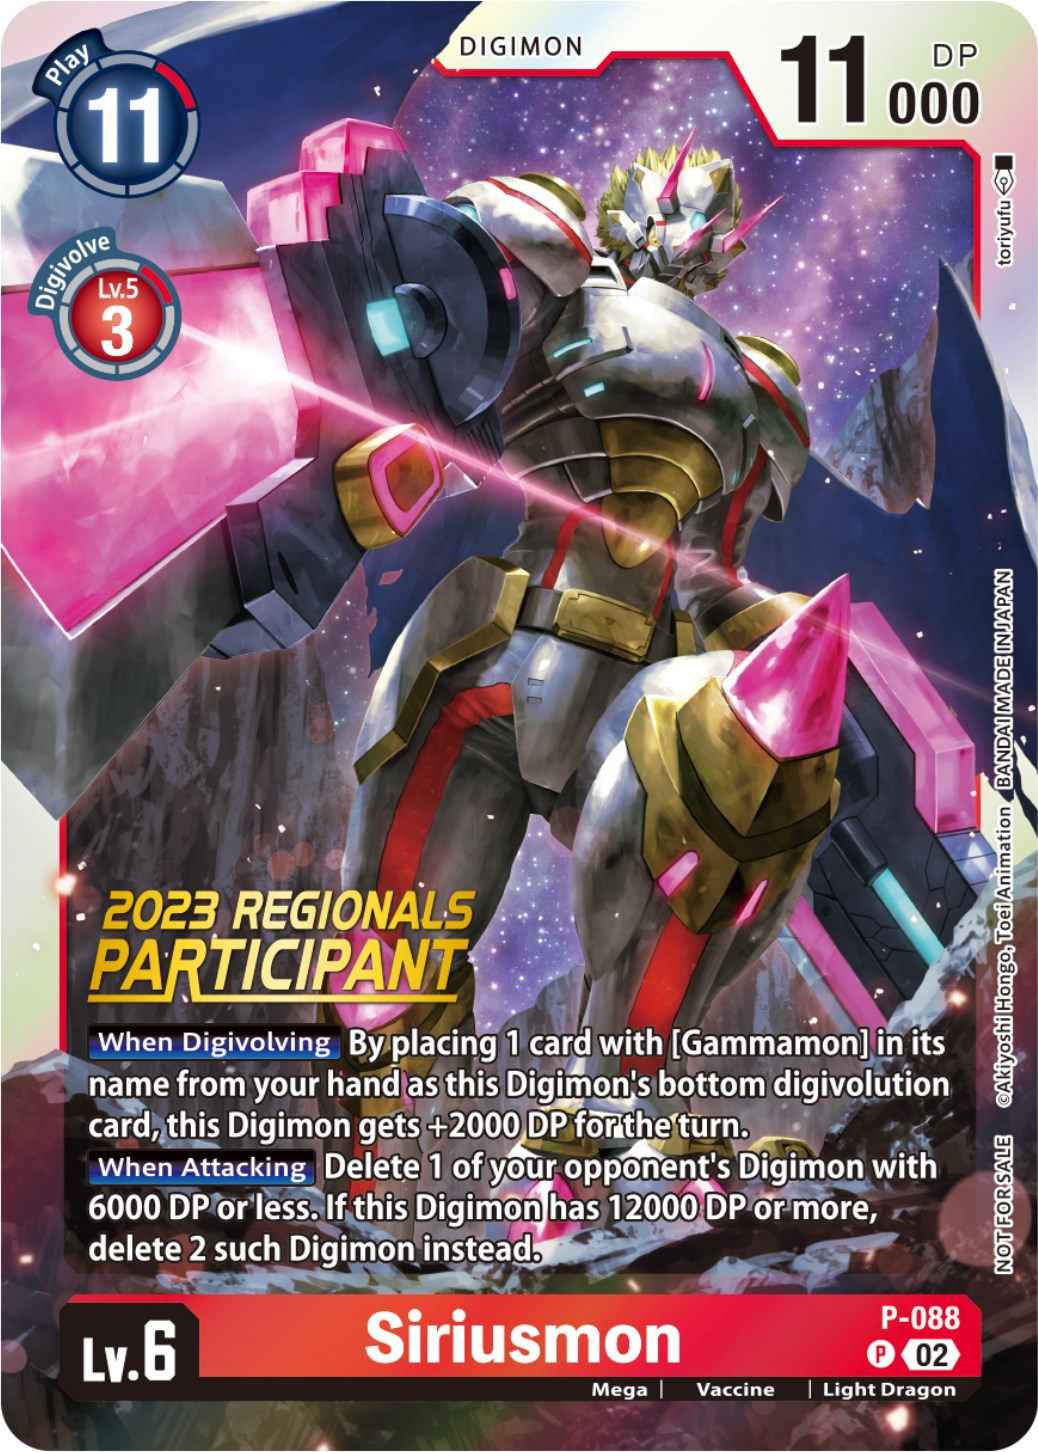 Siriusmon [P-088] (2023 Regionals Participant) [Promotional Cards] | Devastation Store